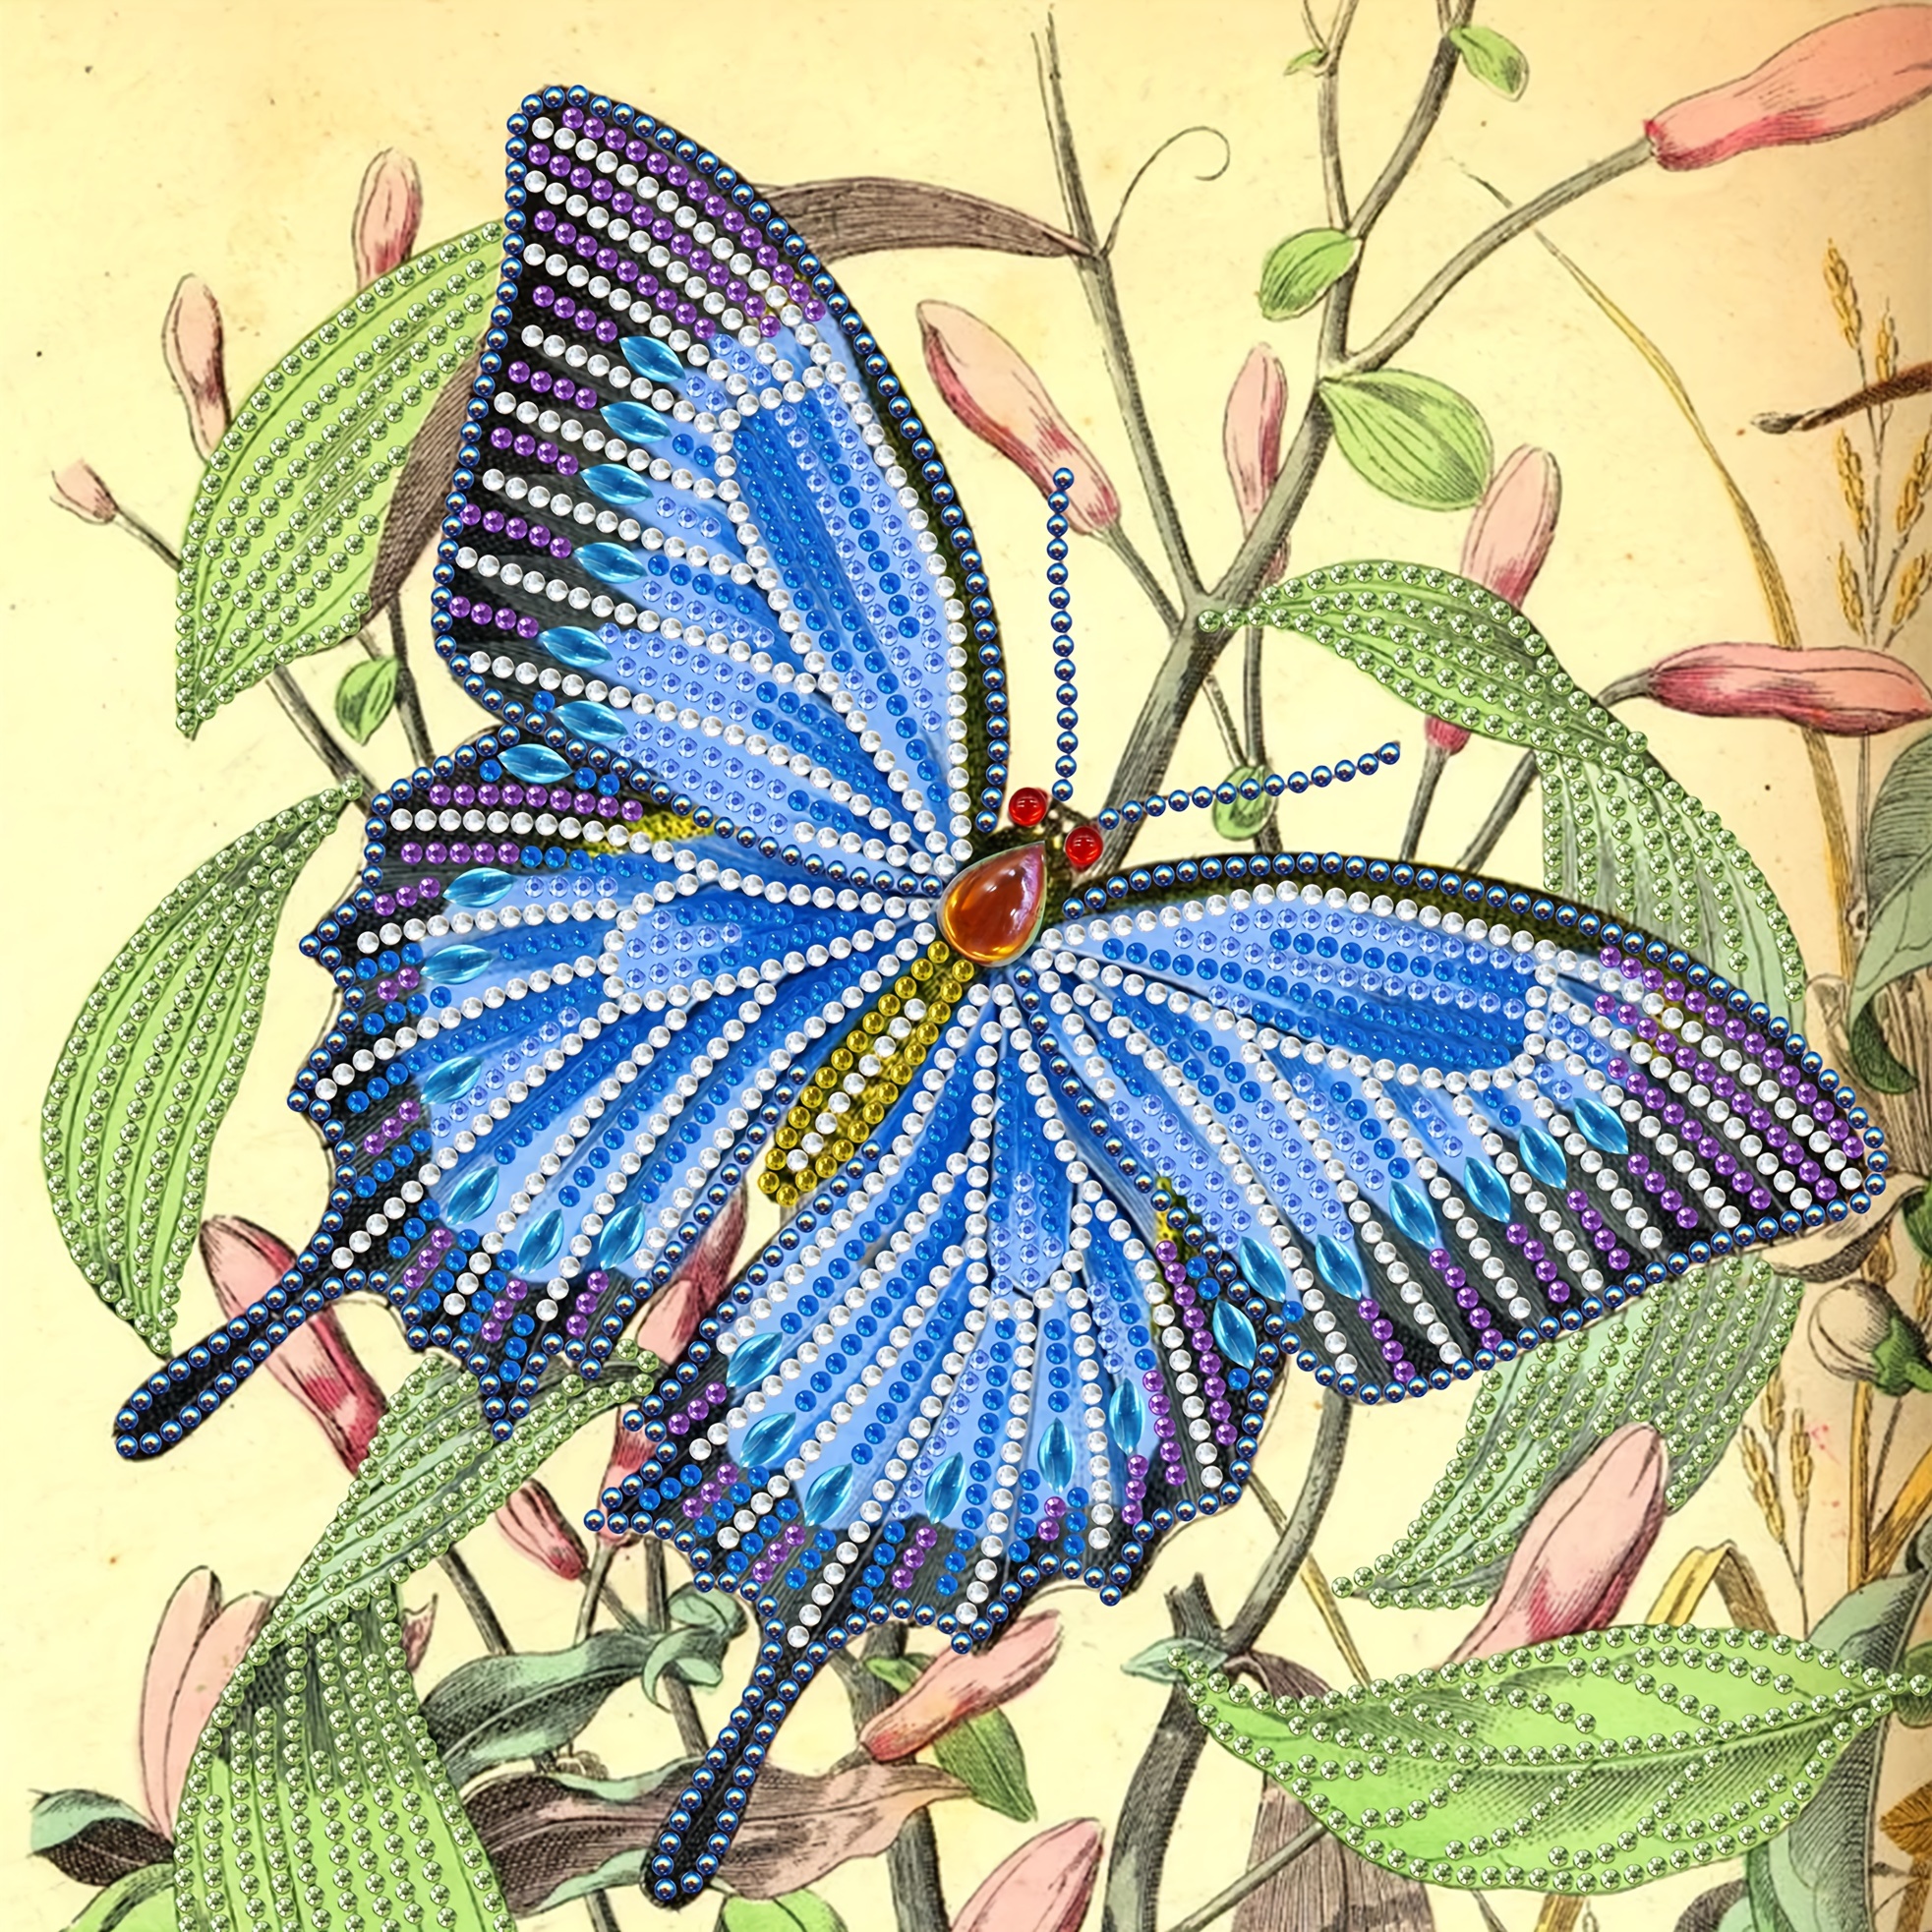 Diamond Art Beginner Blue Butterfly Kit